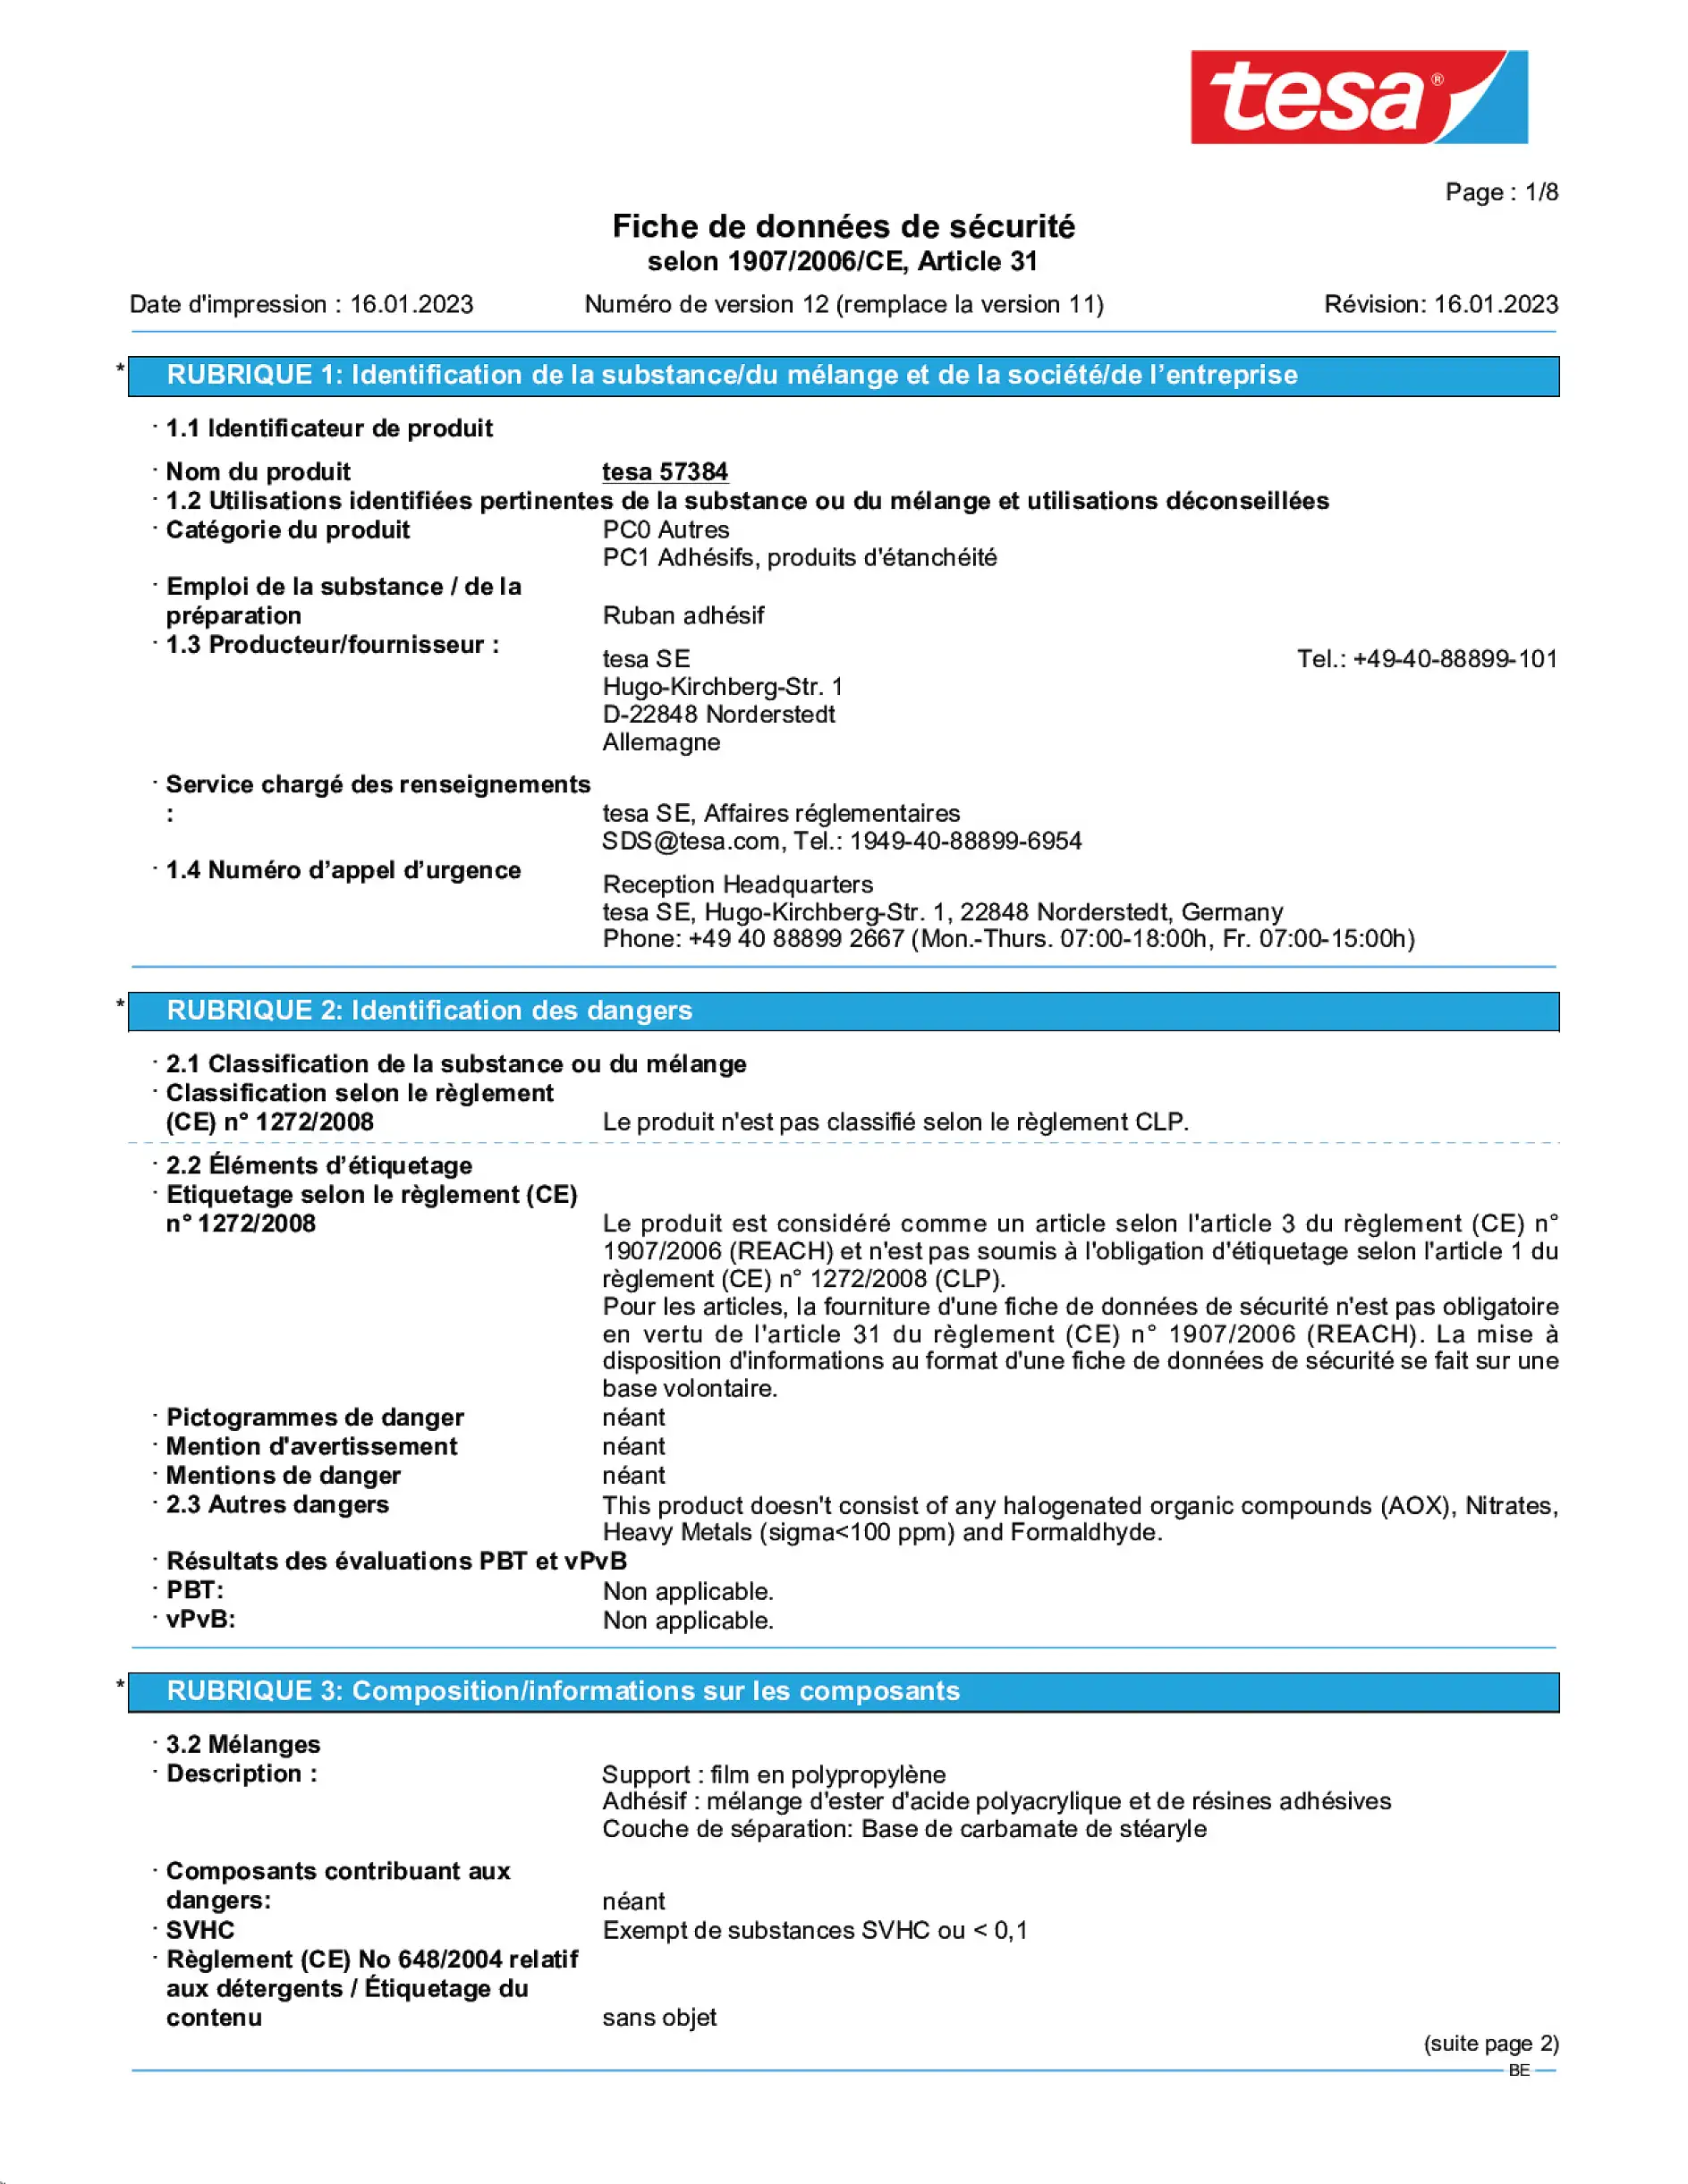 Safety data sheet_tesafilm® 57226_nl-BE_v12